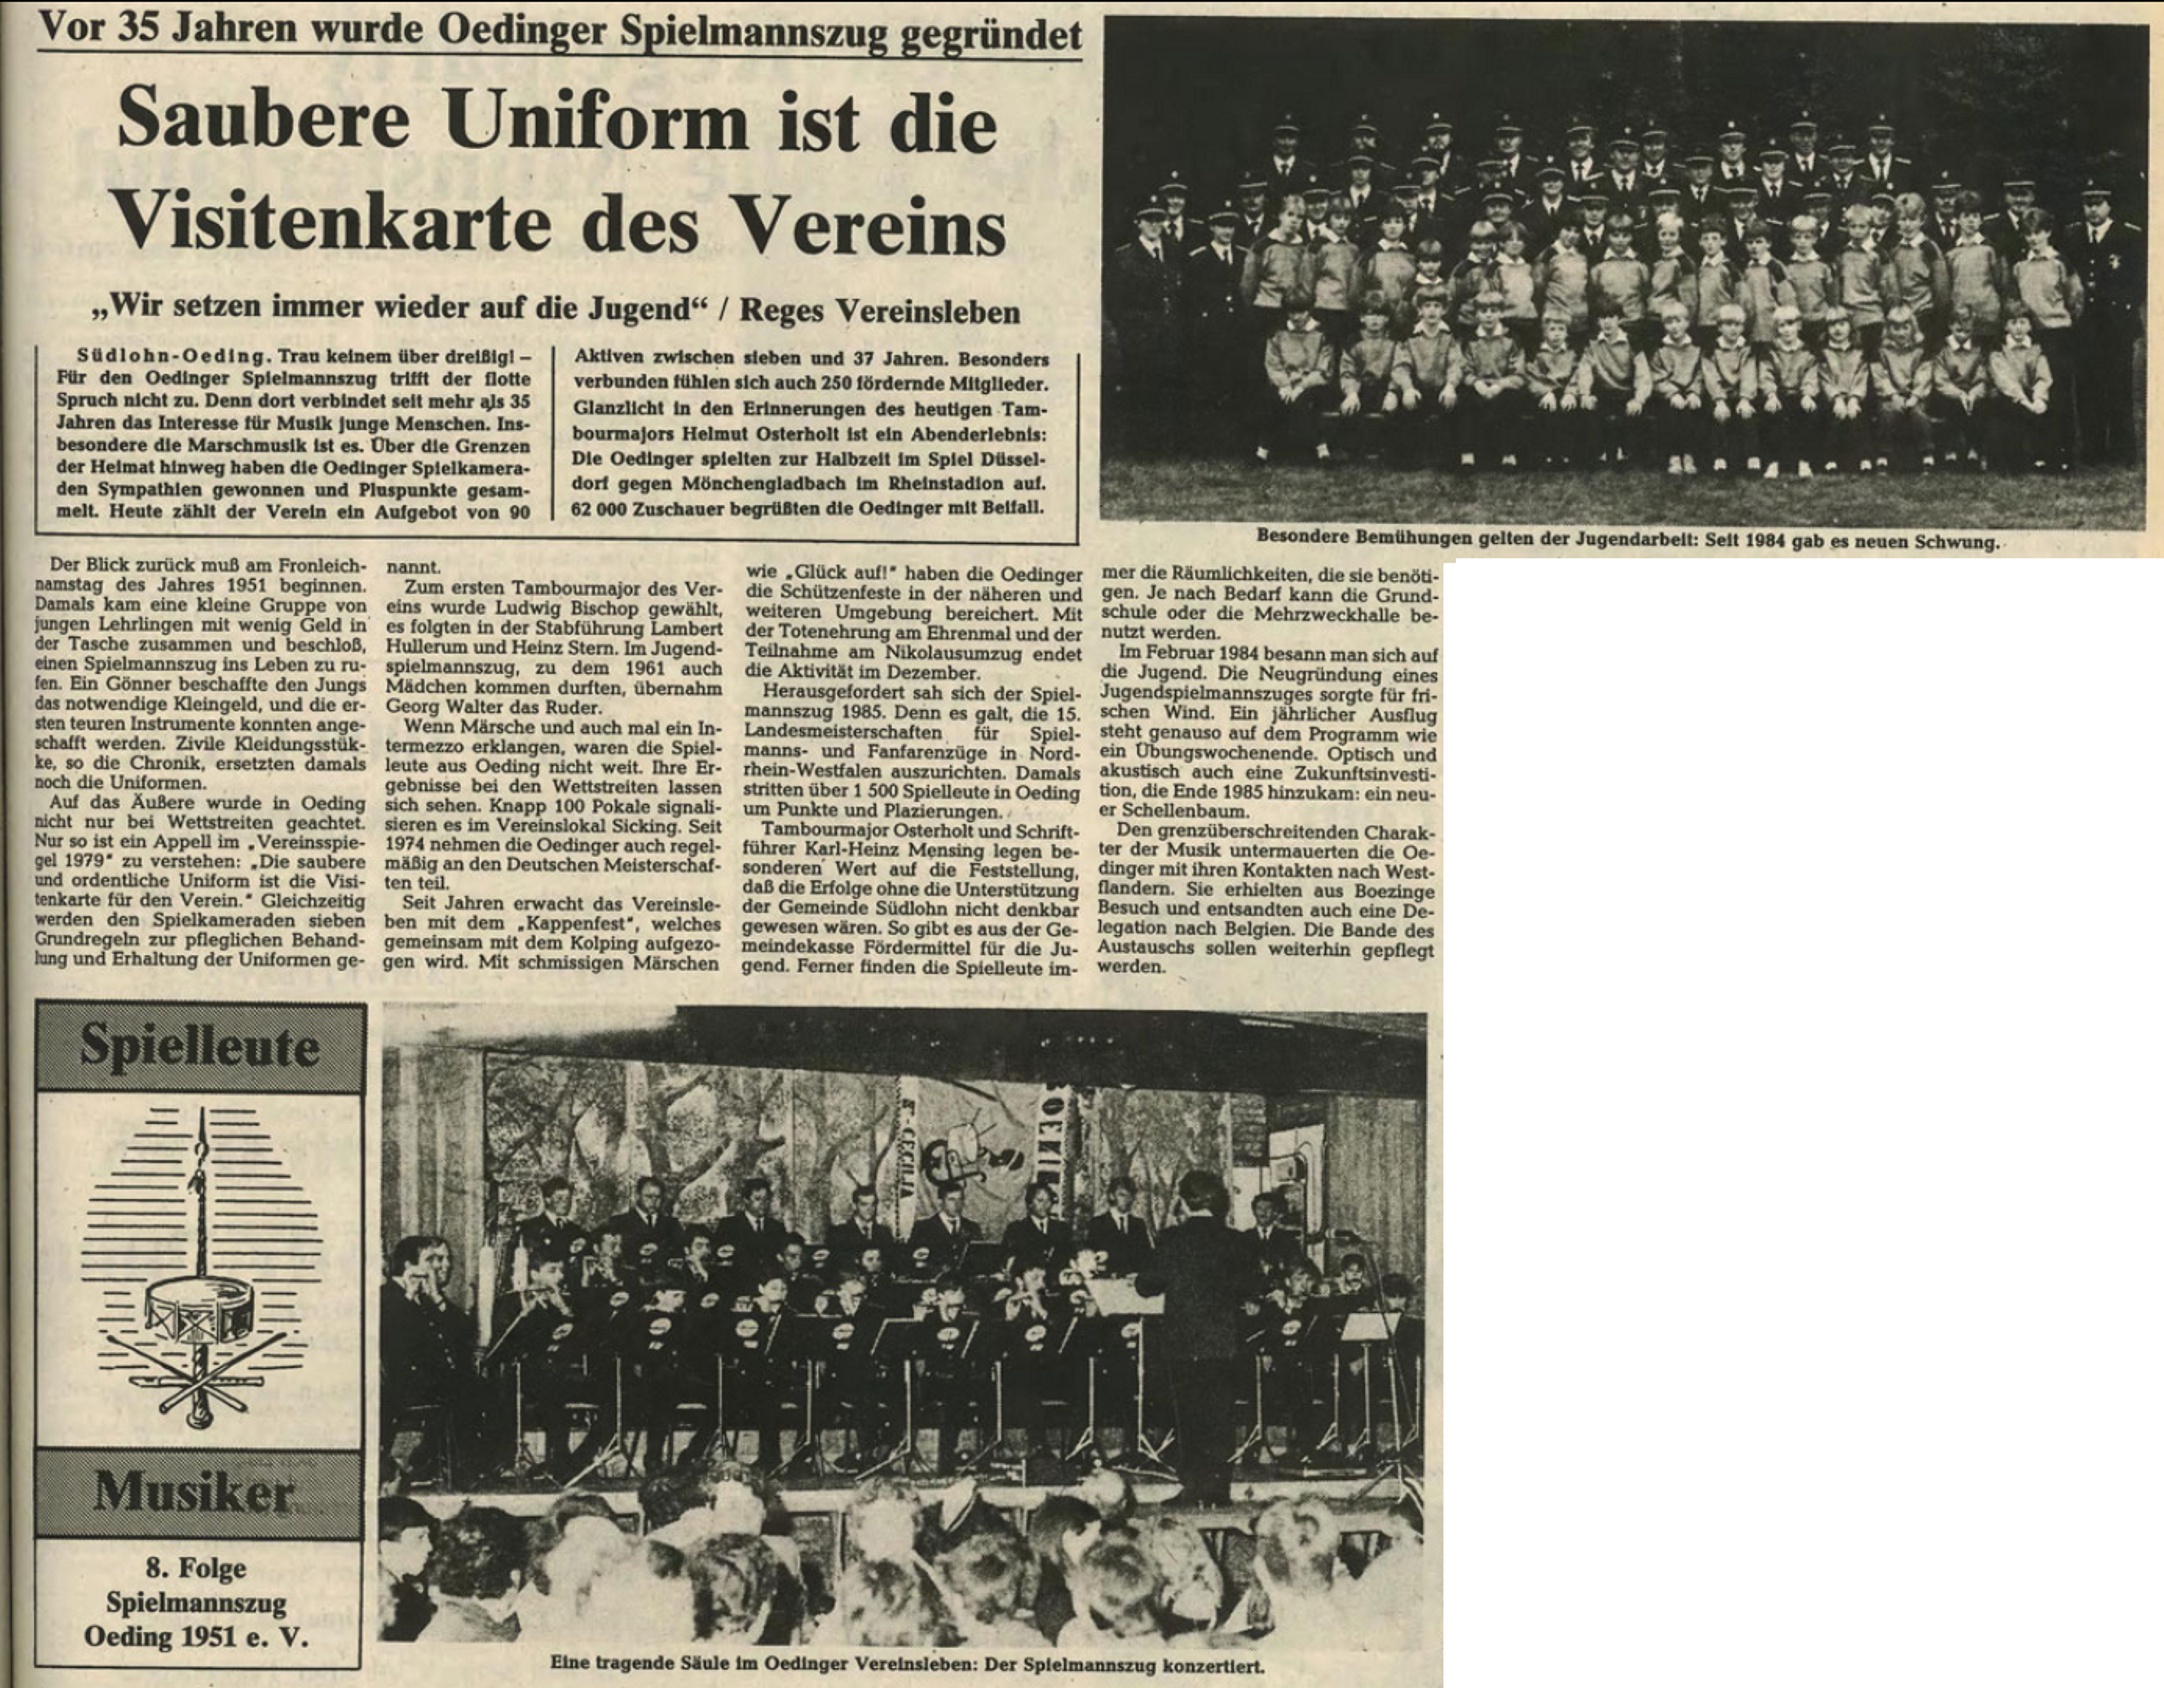 Borkener Zeitung 13.09.1986 - Vor 35 Jahren wurde Spielmannszug Oeding gegründet